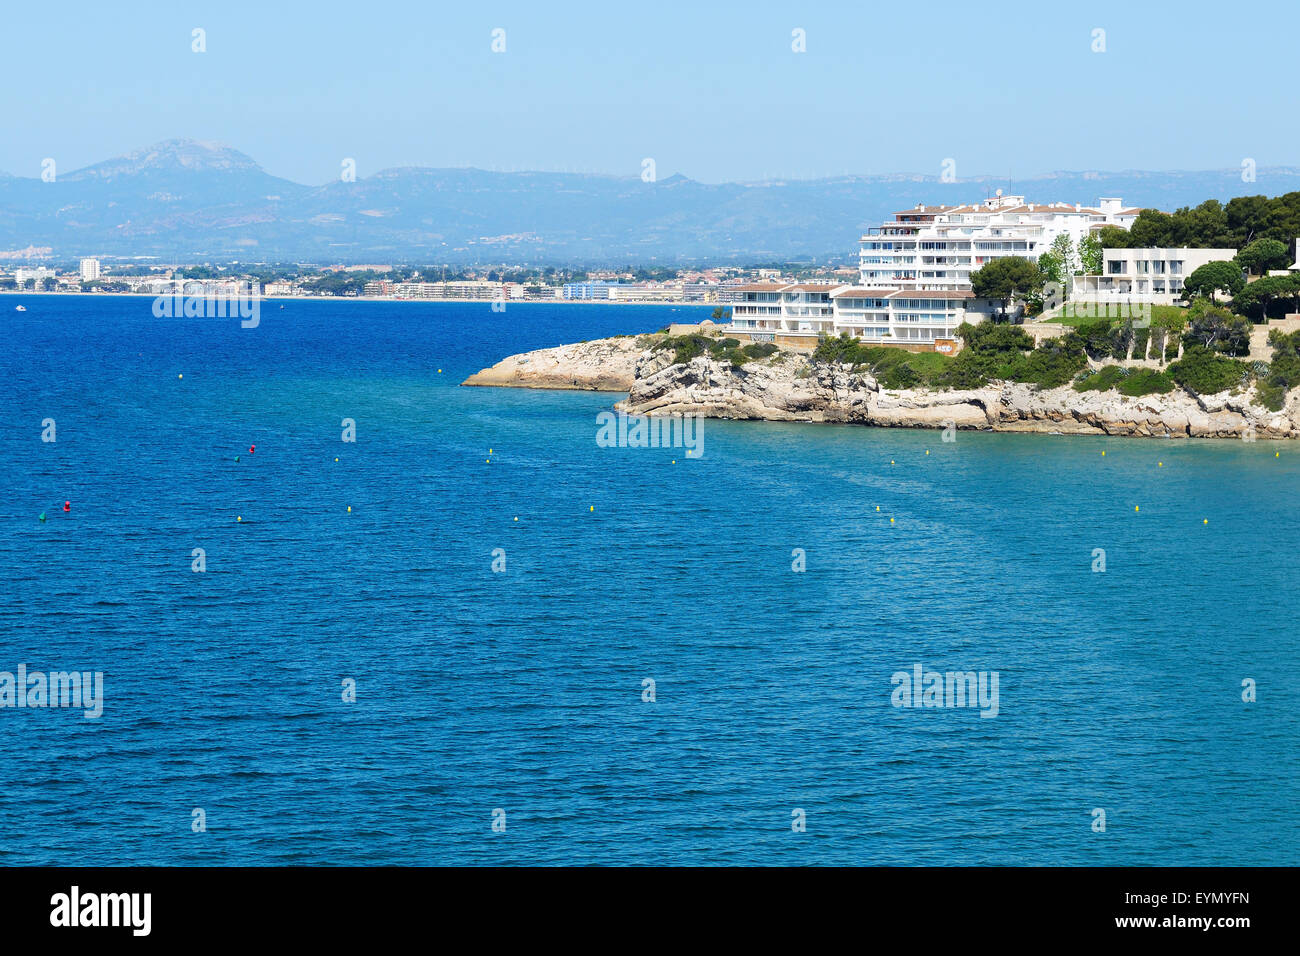 La vue sur la baie et l'hôtel de luxe, Costa Dorada, Espagne Banque D'Images